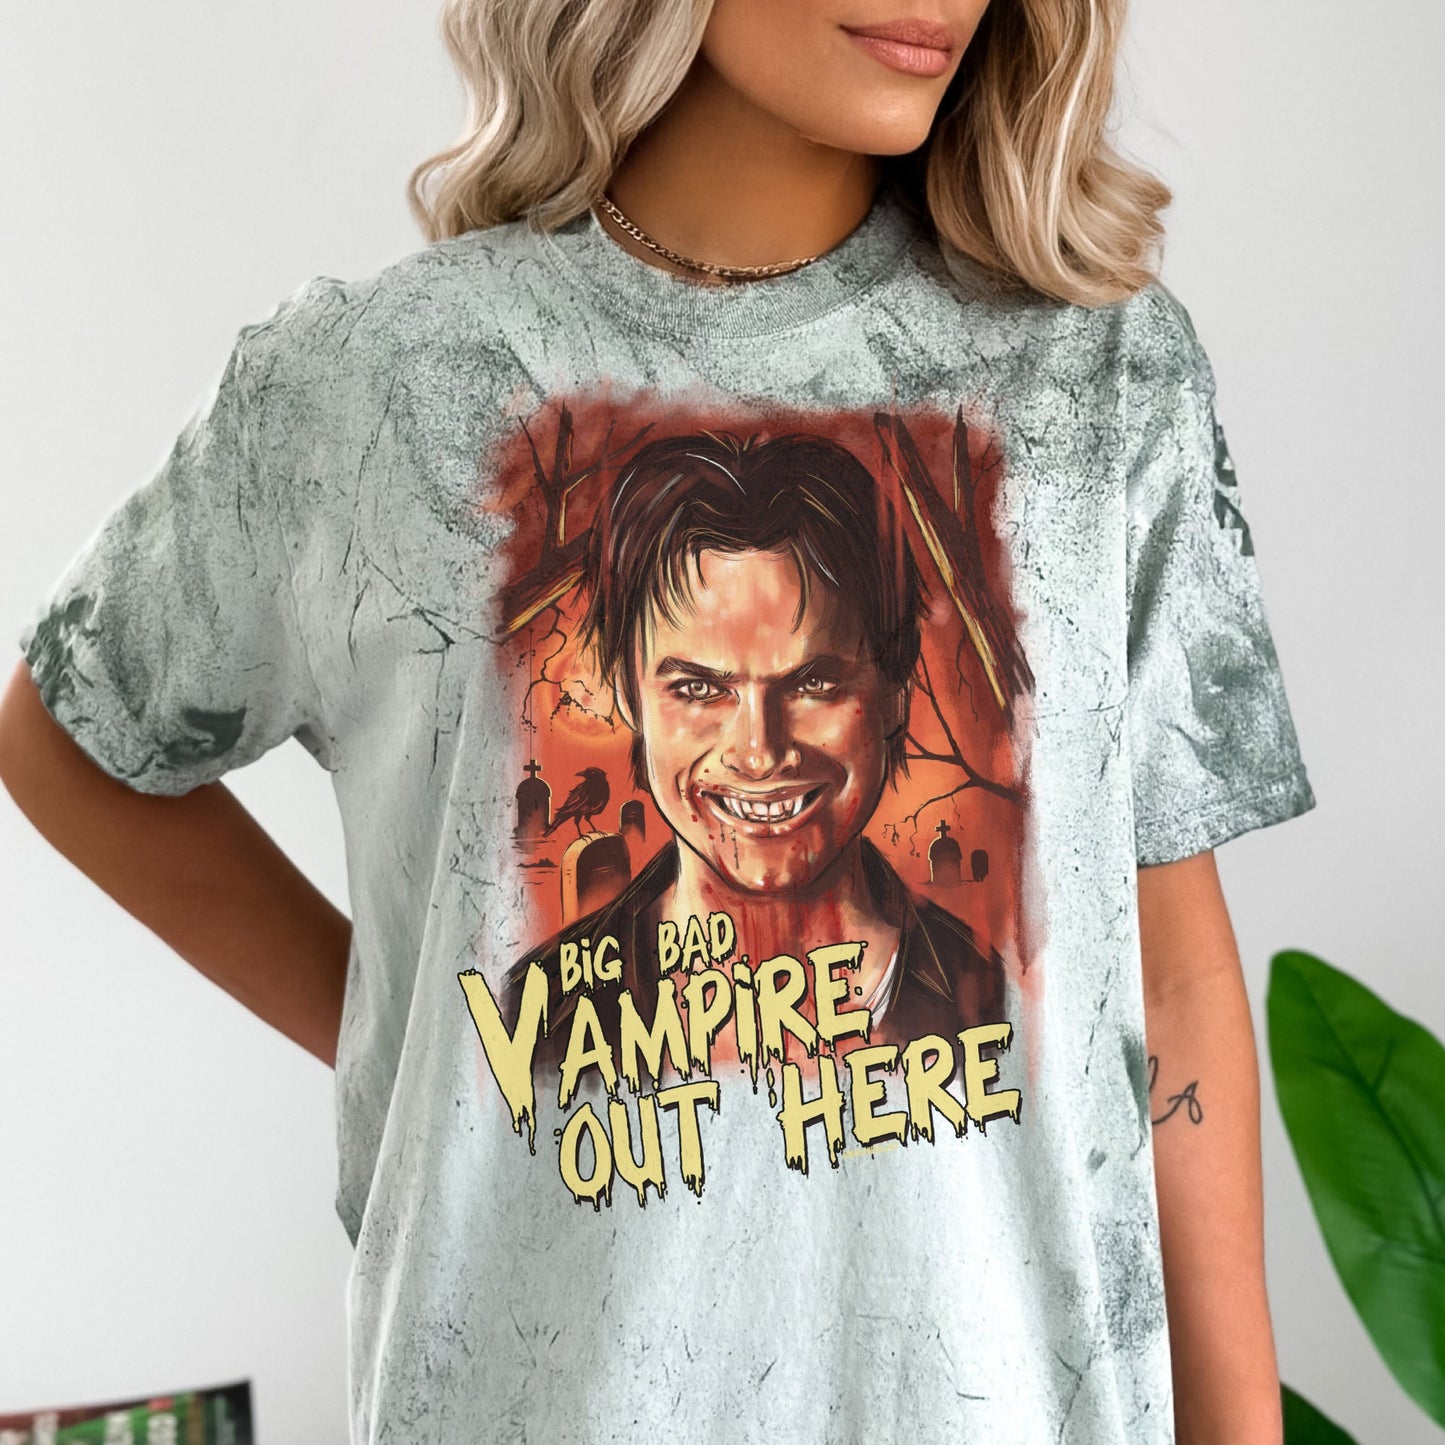 Damon Salvatore shirt, Big Bad Vampire, Tvd shirt, Tvd merch, Tvd fan gift, The Vampire Diaries, Team damon shirt